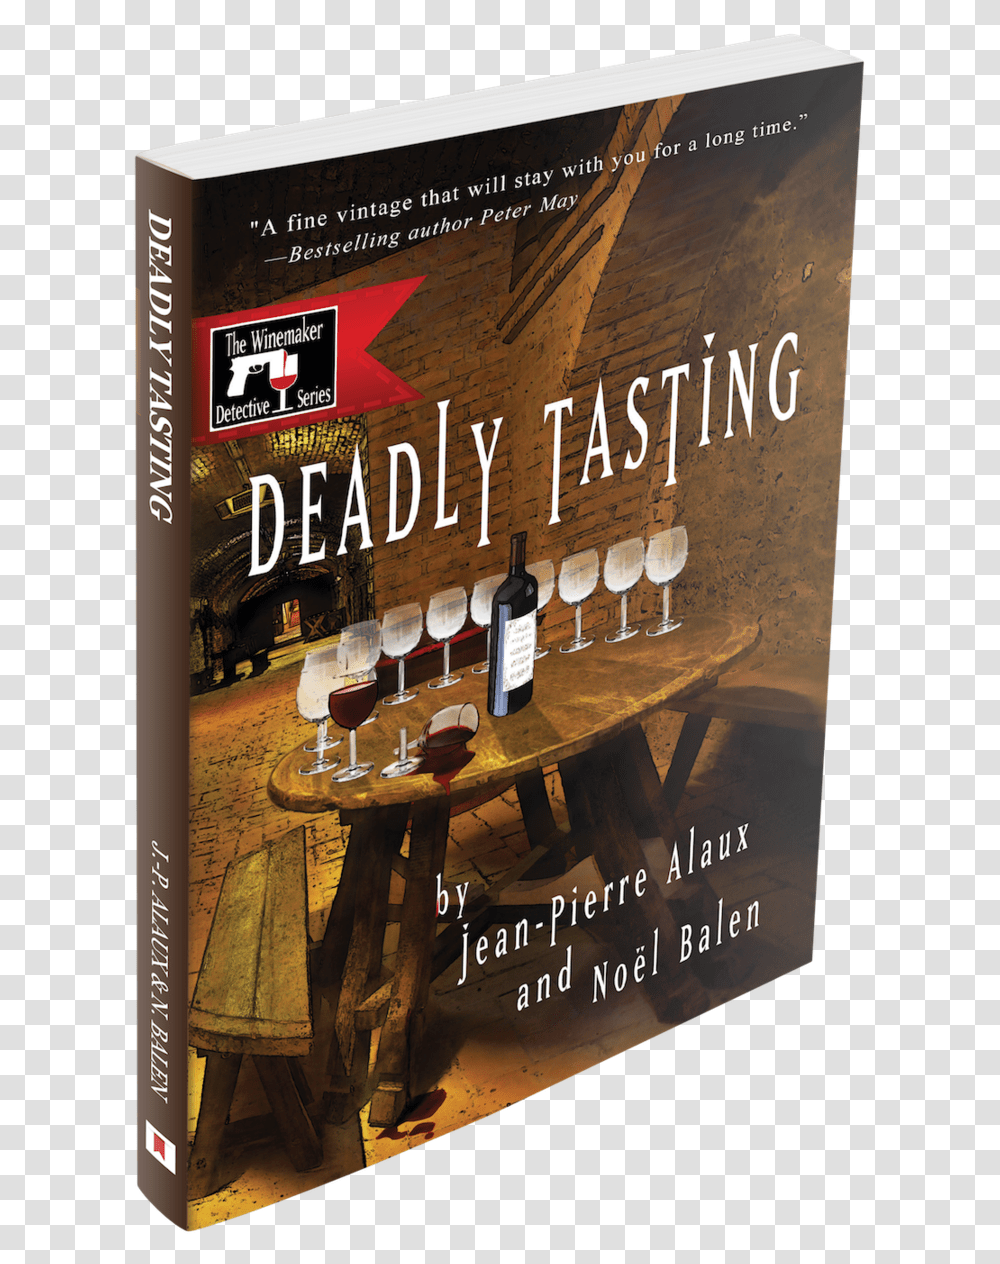 Deadlytasting Copy Flyer, Wine, Alcohol, Beverage, Poster Transparent Png